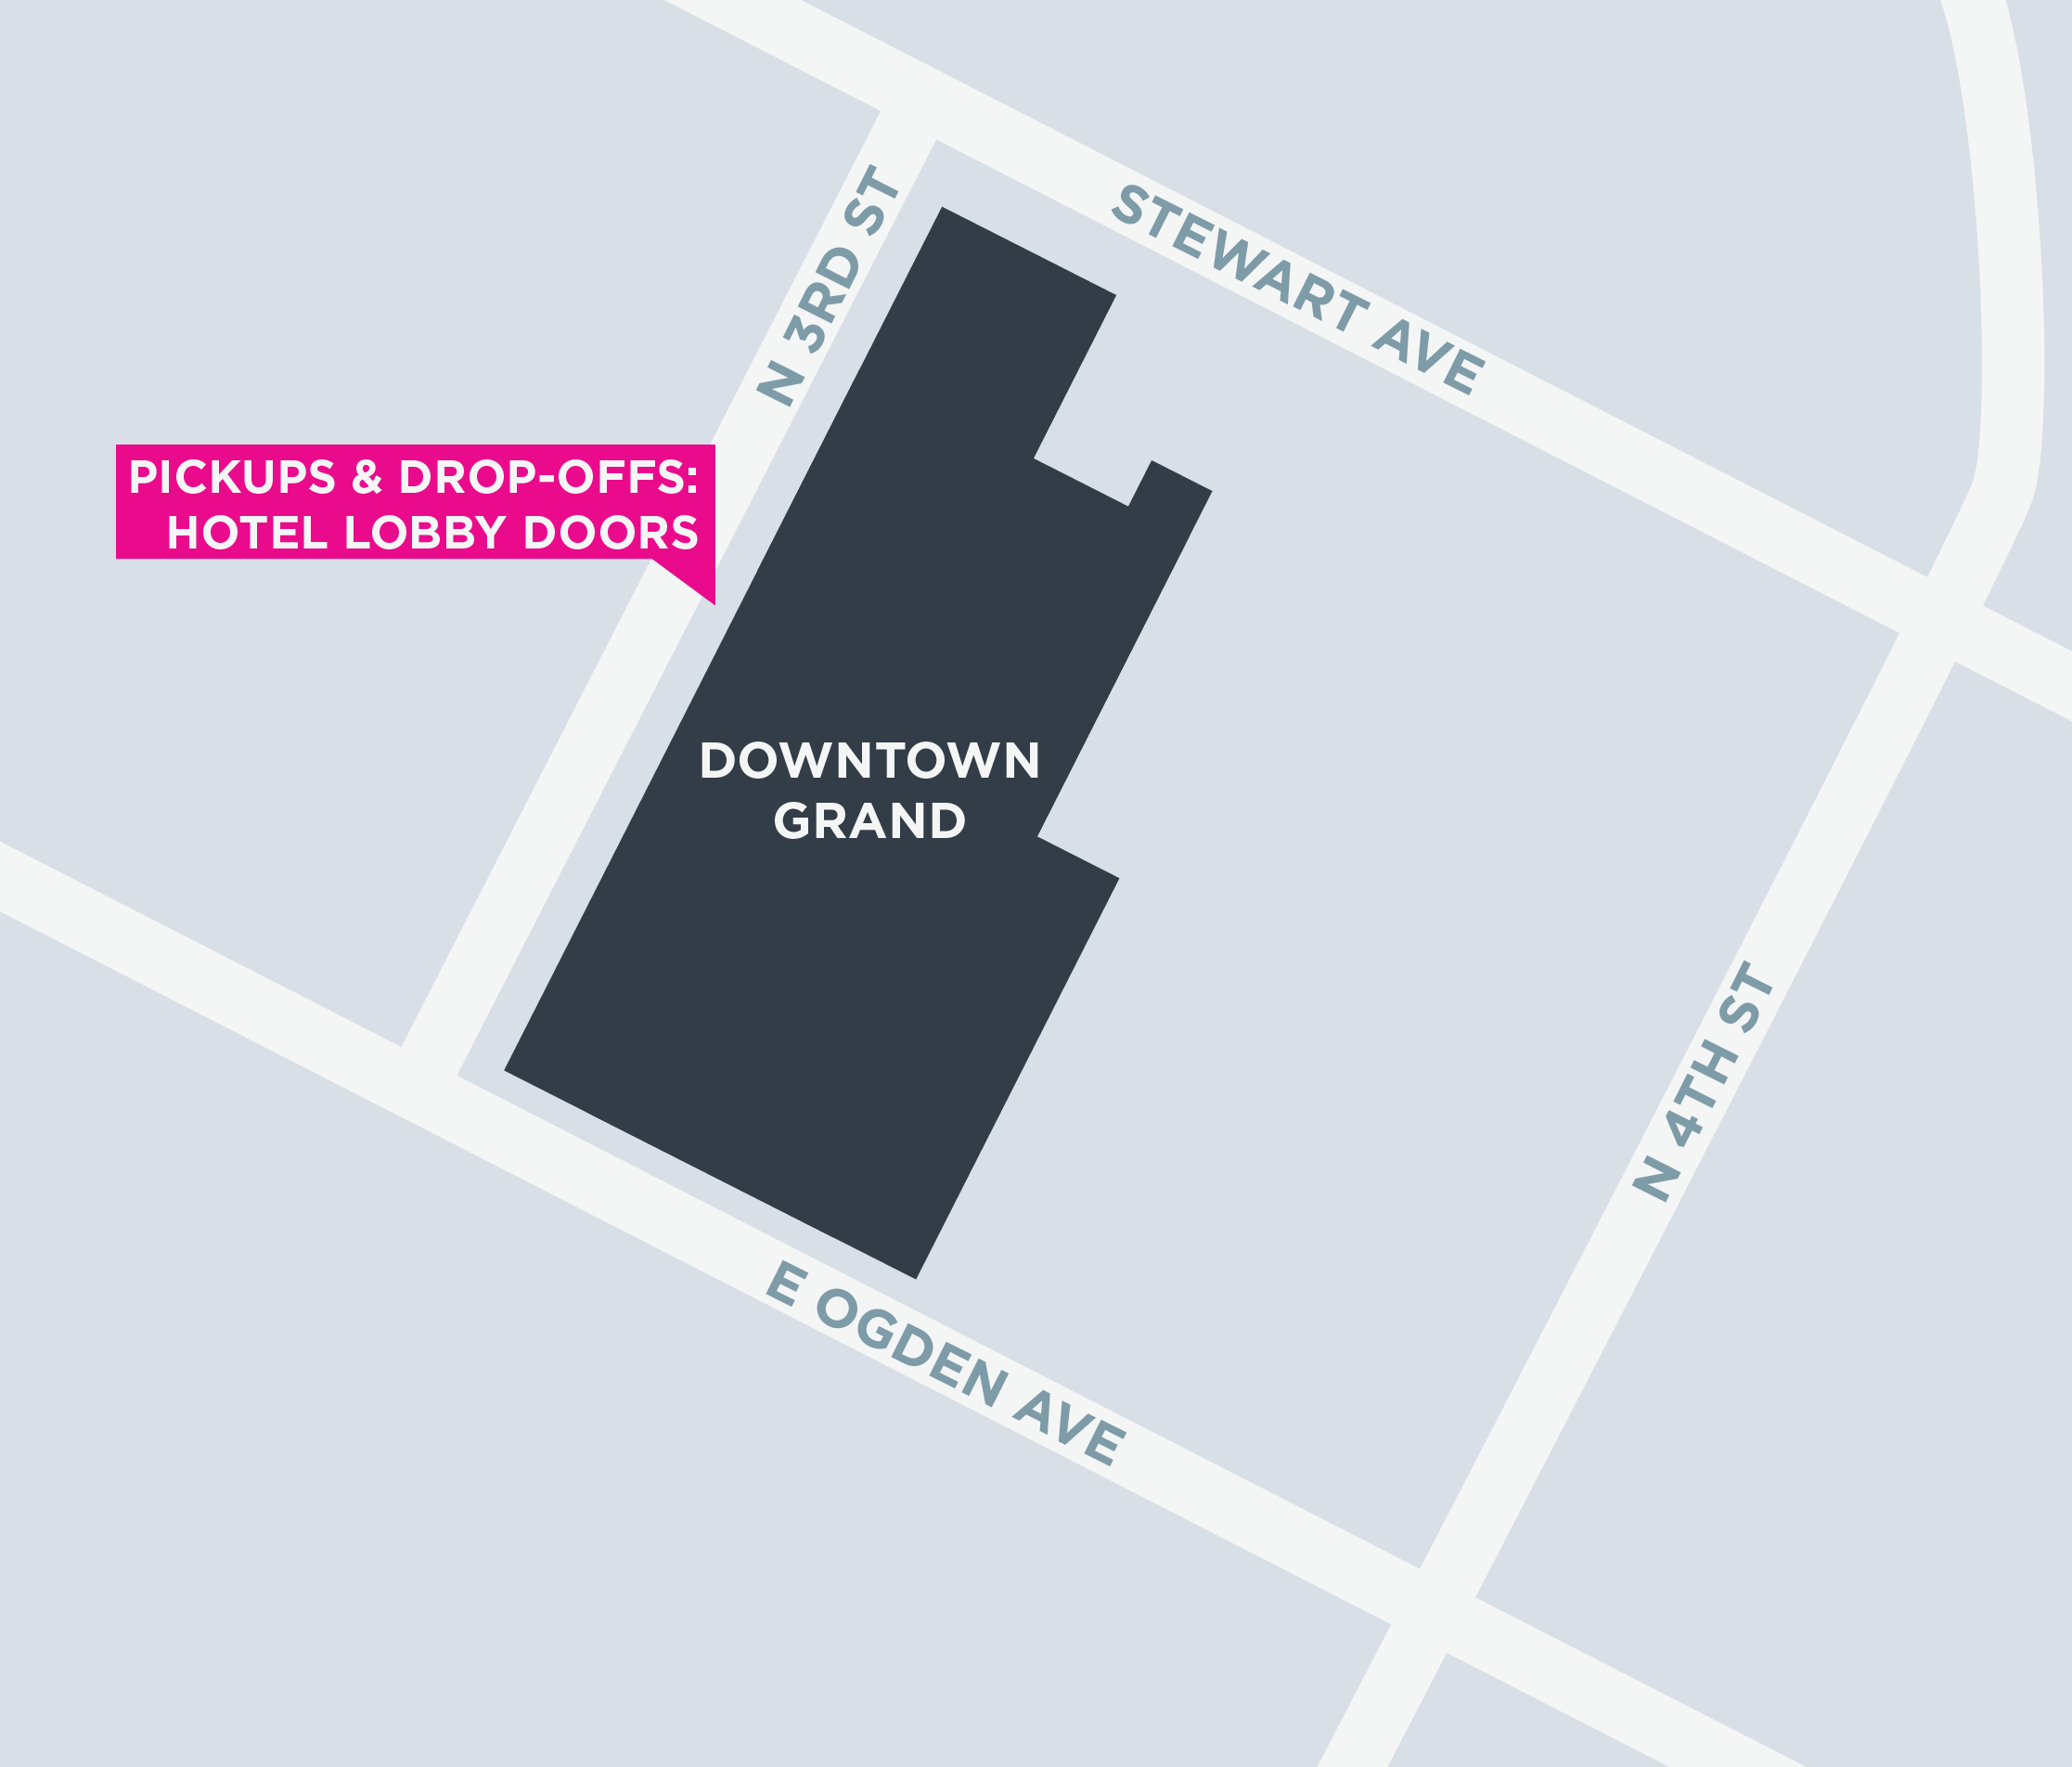 Cette image montre un plan du Downtown Grand, y compris les zones de départ et d'arrivée.